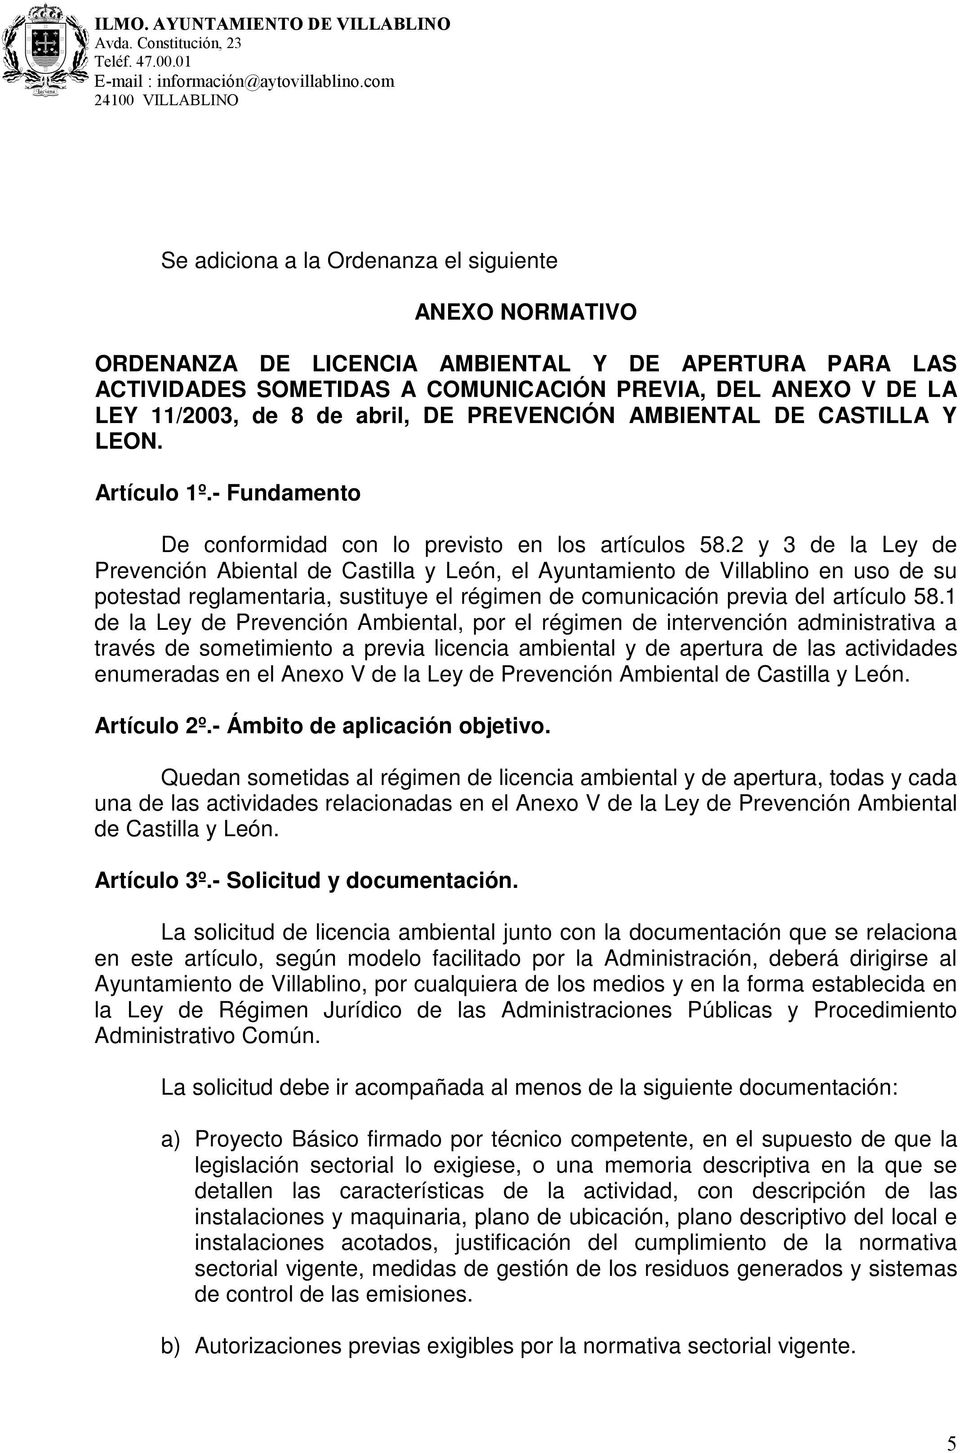 2 y 3 de la Ley de Prevención Abiental de Castilla y León, el Ayuntamiento de Villablino en uso de su potestad reglamentaria, sustituye el régimen de comunicación previa del artículo 58.